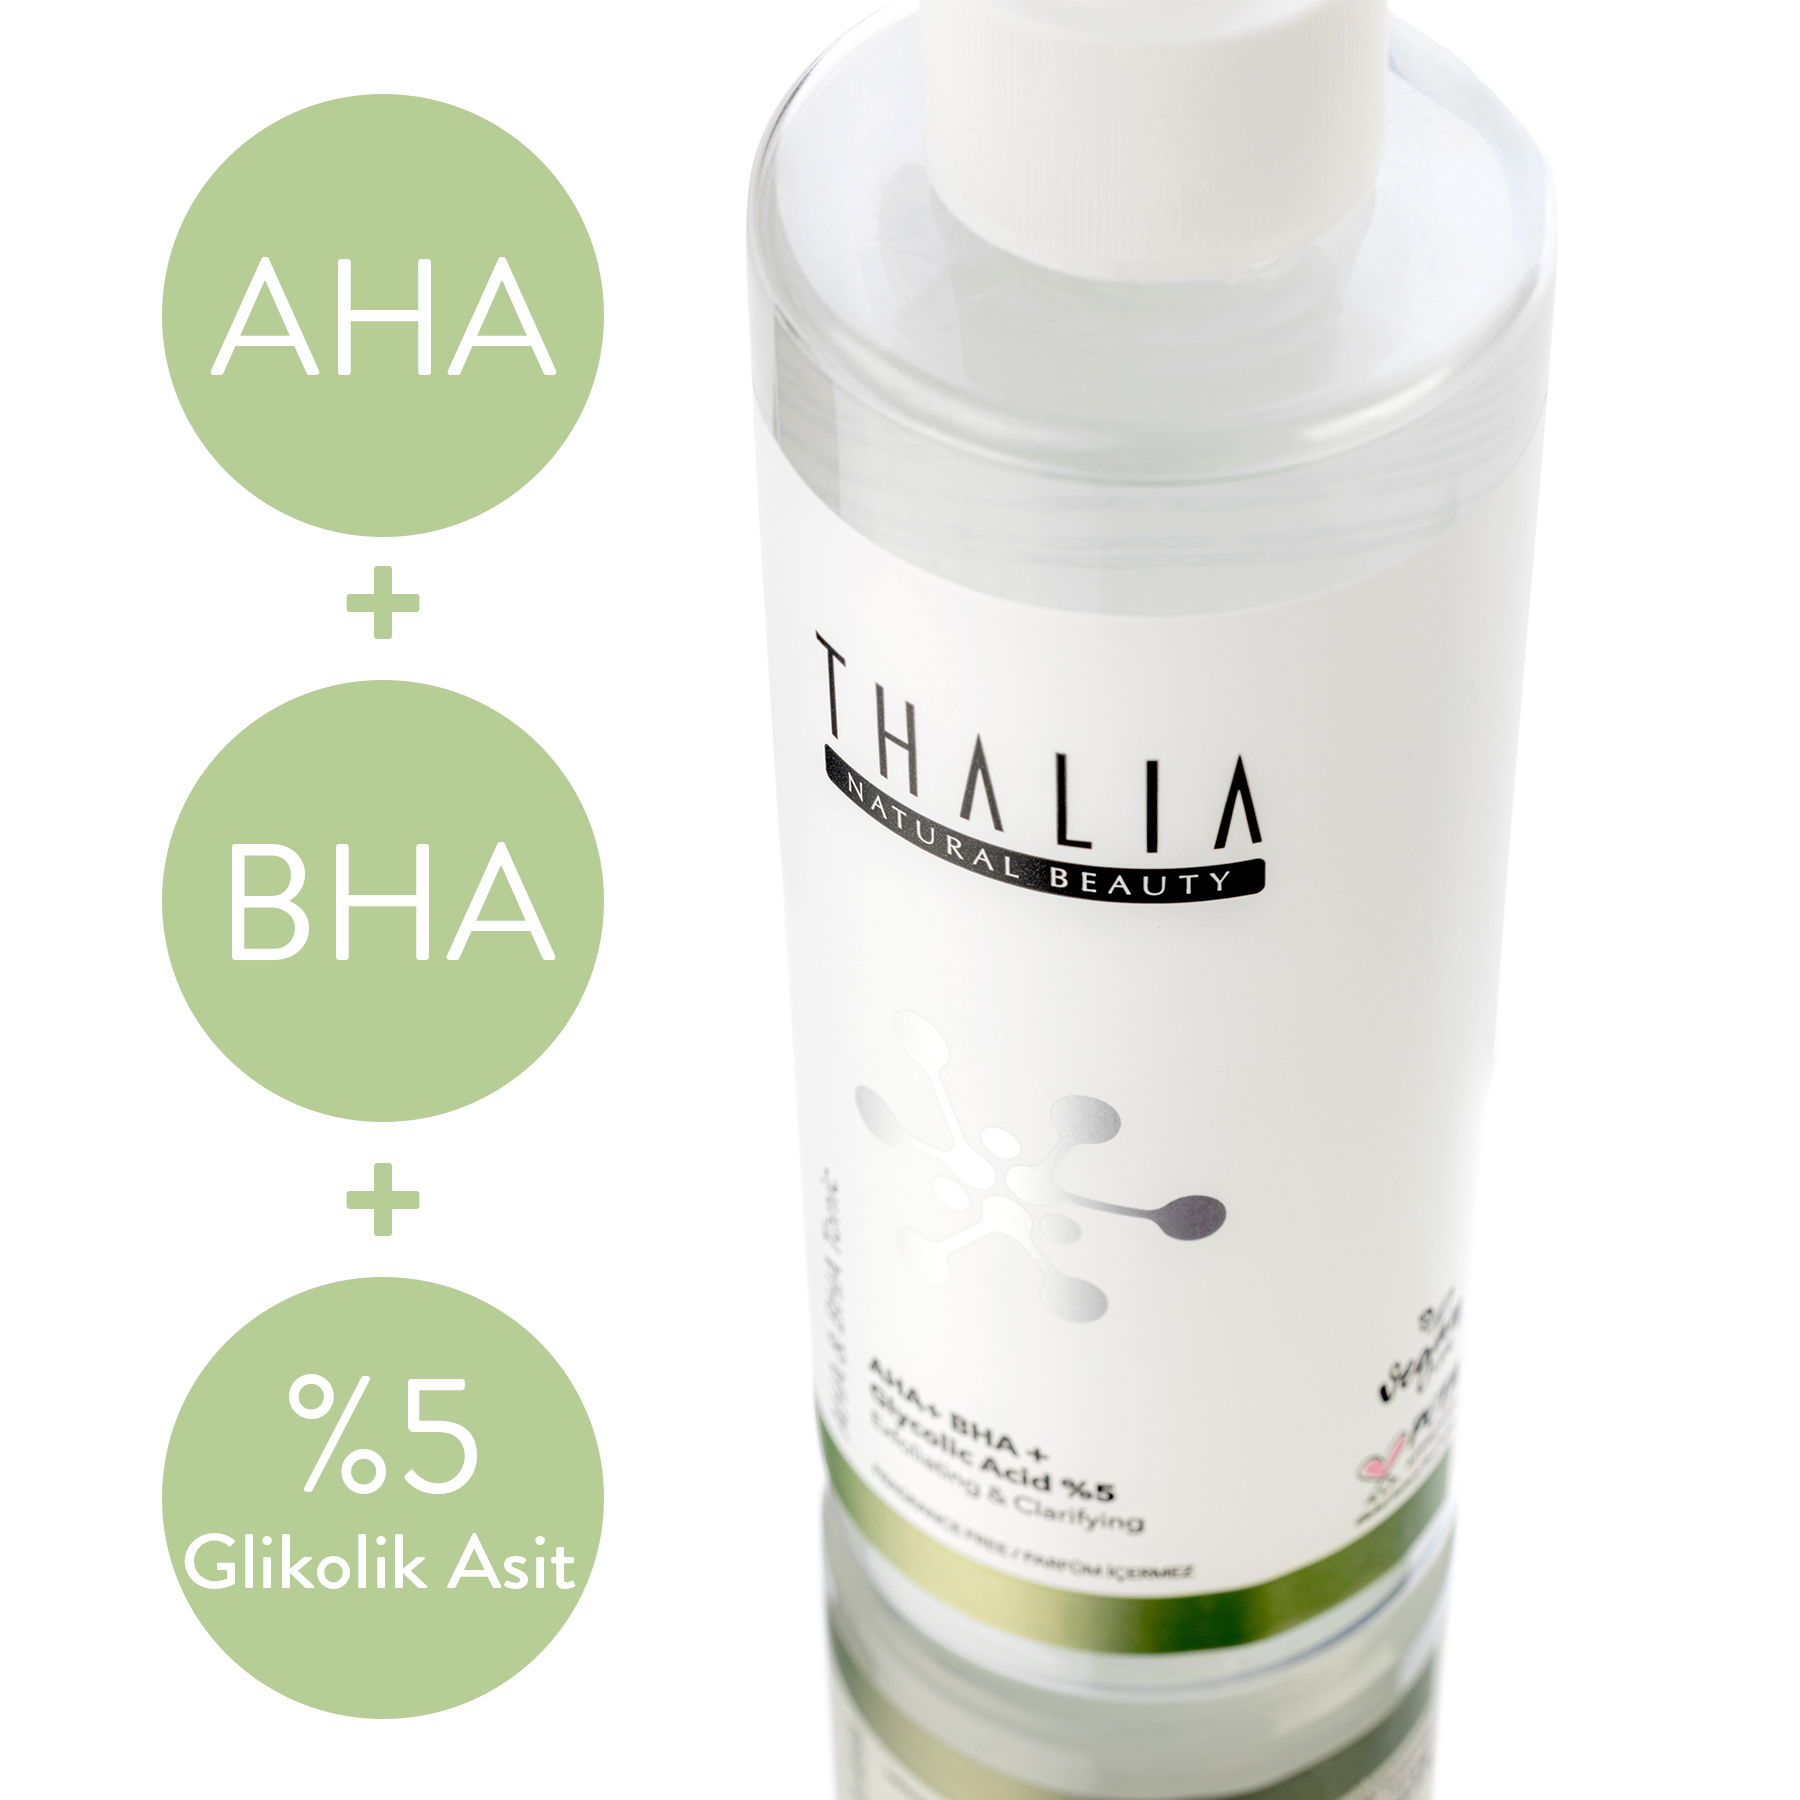 Thalia Gözenek Sıkılaştırmaya Ve Arındırmaya Yardımcı Tonik 200 ml AHA+BHA+ Glikolik Asit % 5 - 200 ml